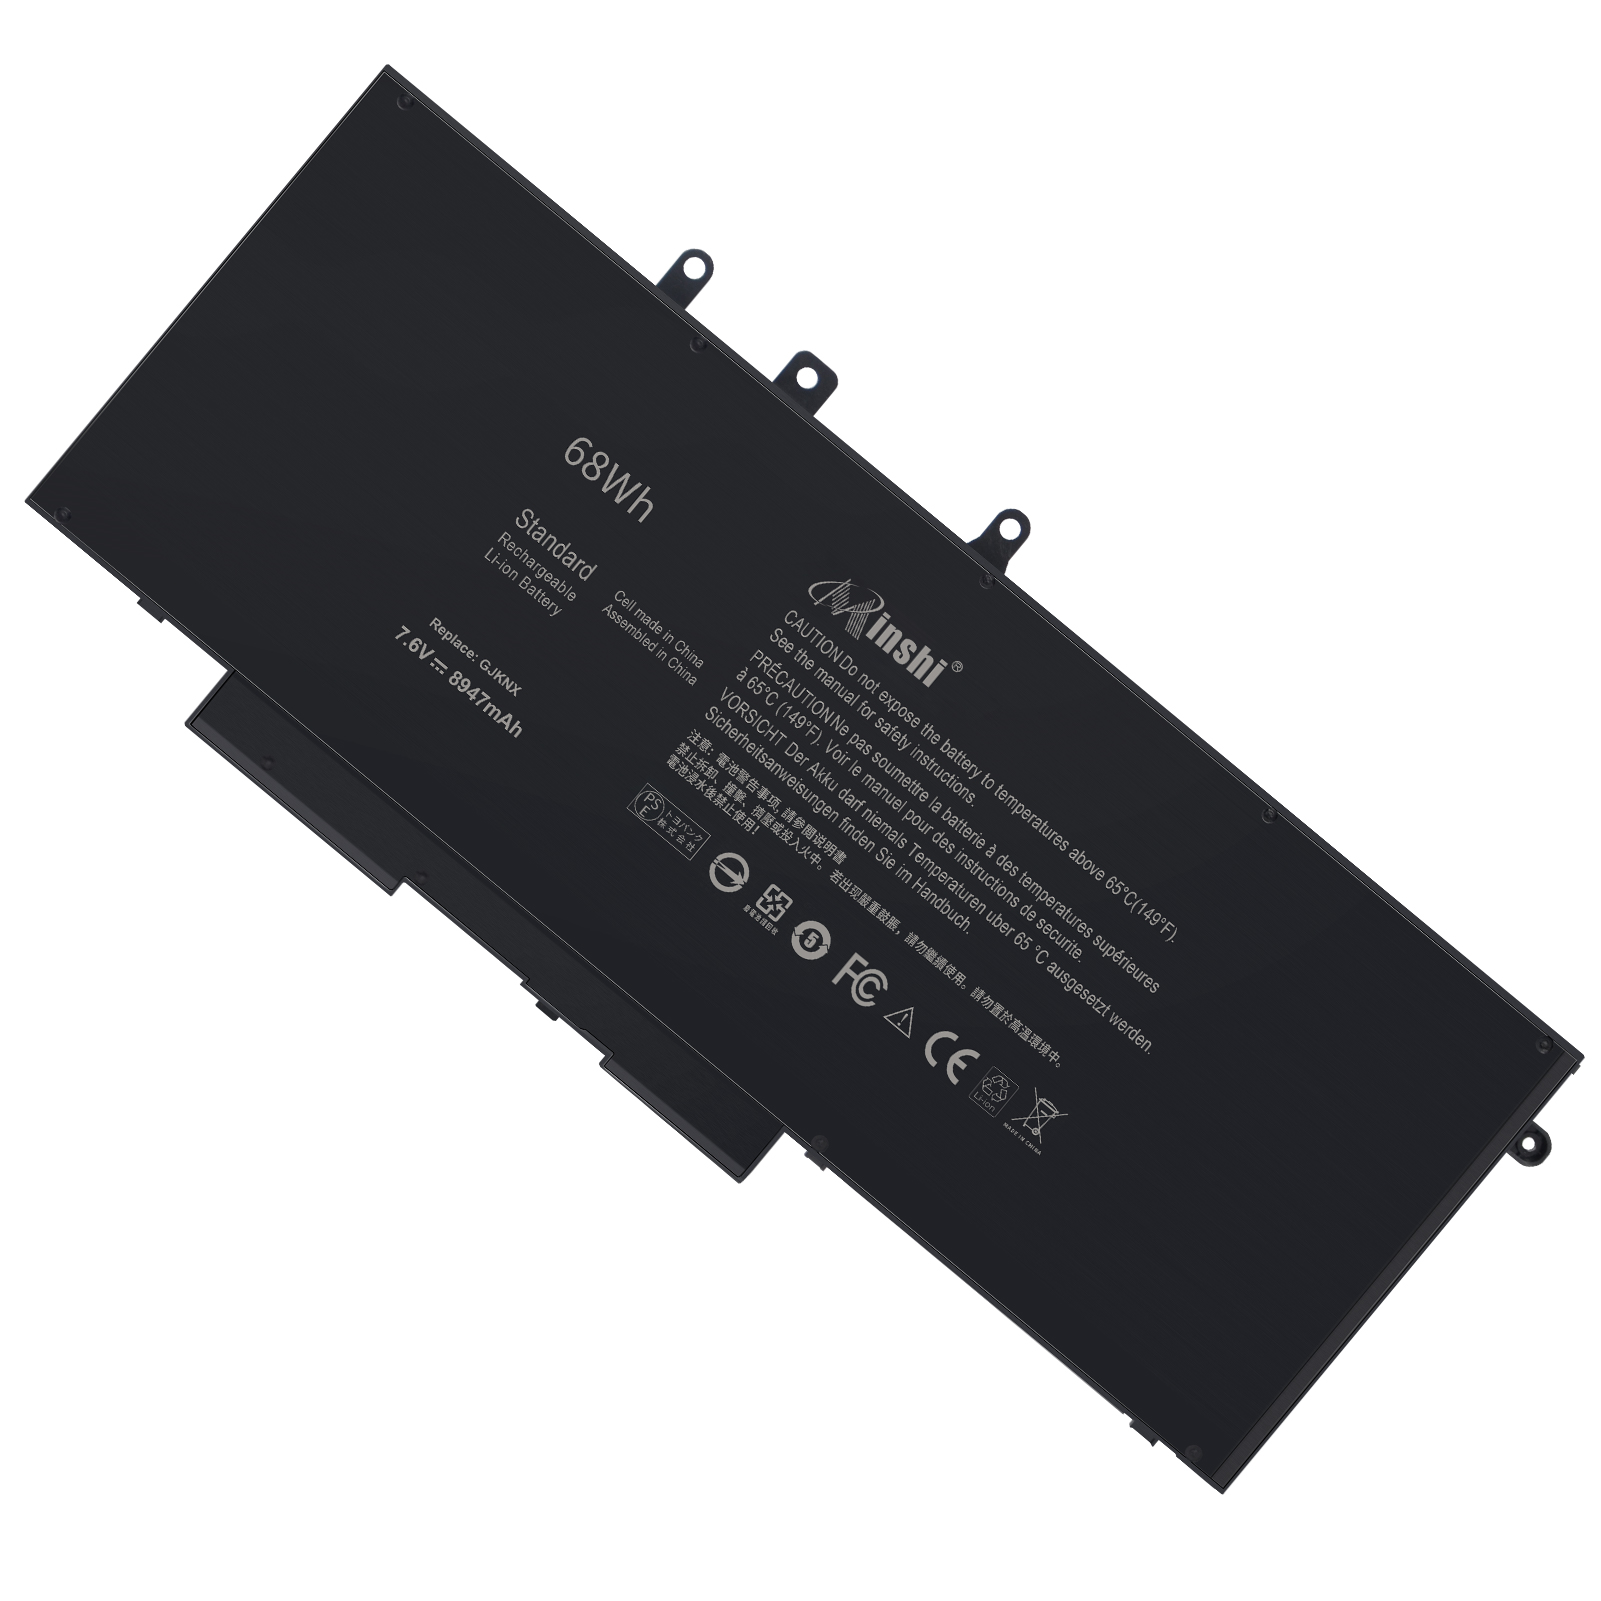 DELL Latitude 5320 互換バッテリパック 42Wh 11.4V 対応用 １年保証 高性能 PSE認証 互換バッテリー